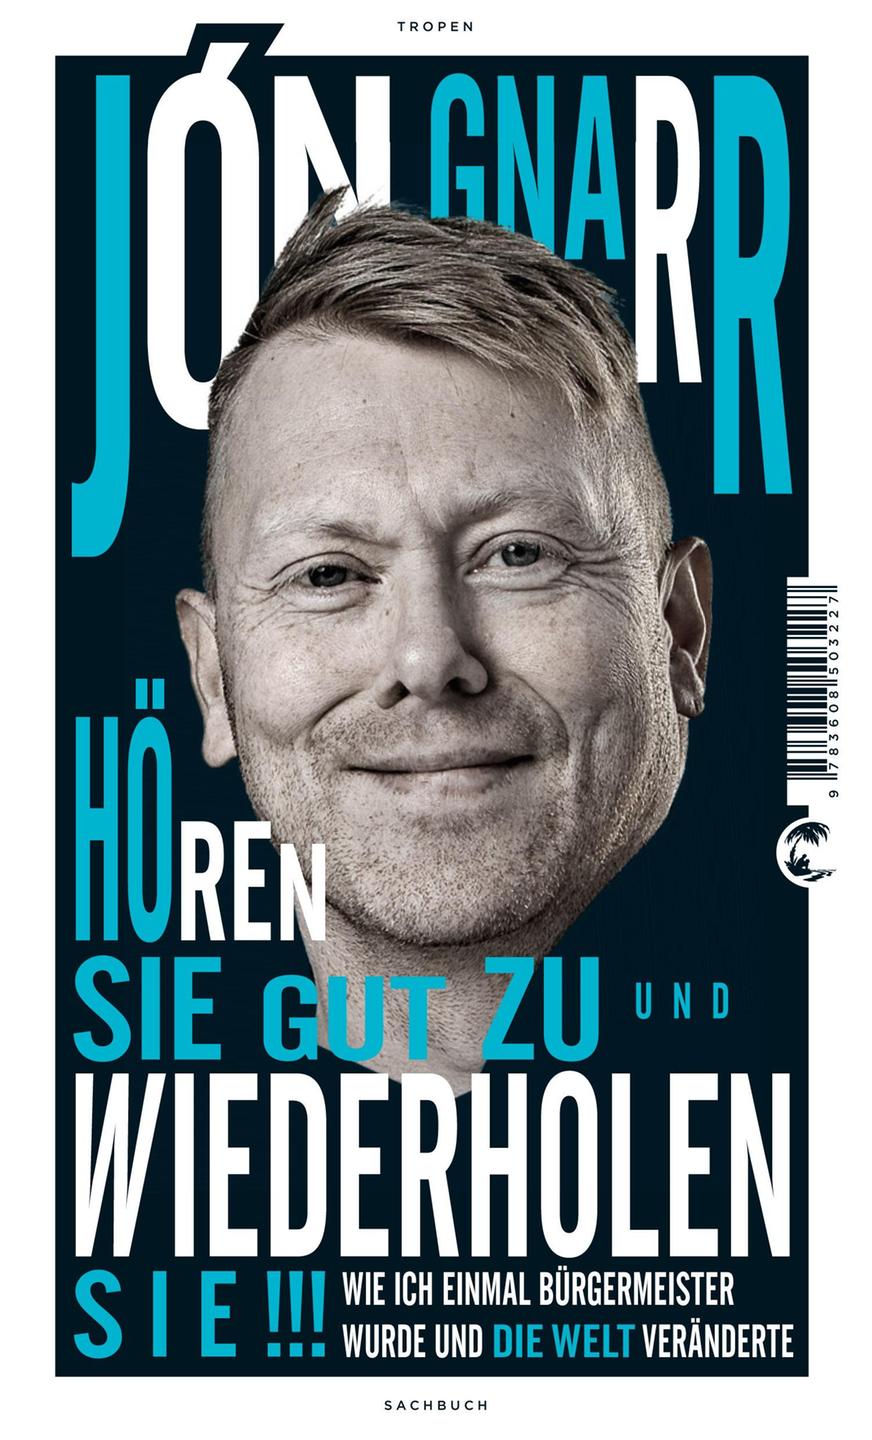 Cover: "Hören Sie gut zu und wiederholen Sie" von Jón Gnarr